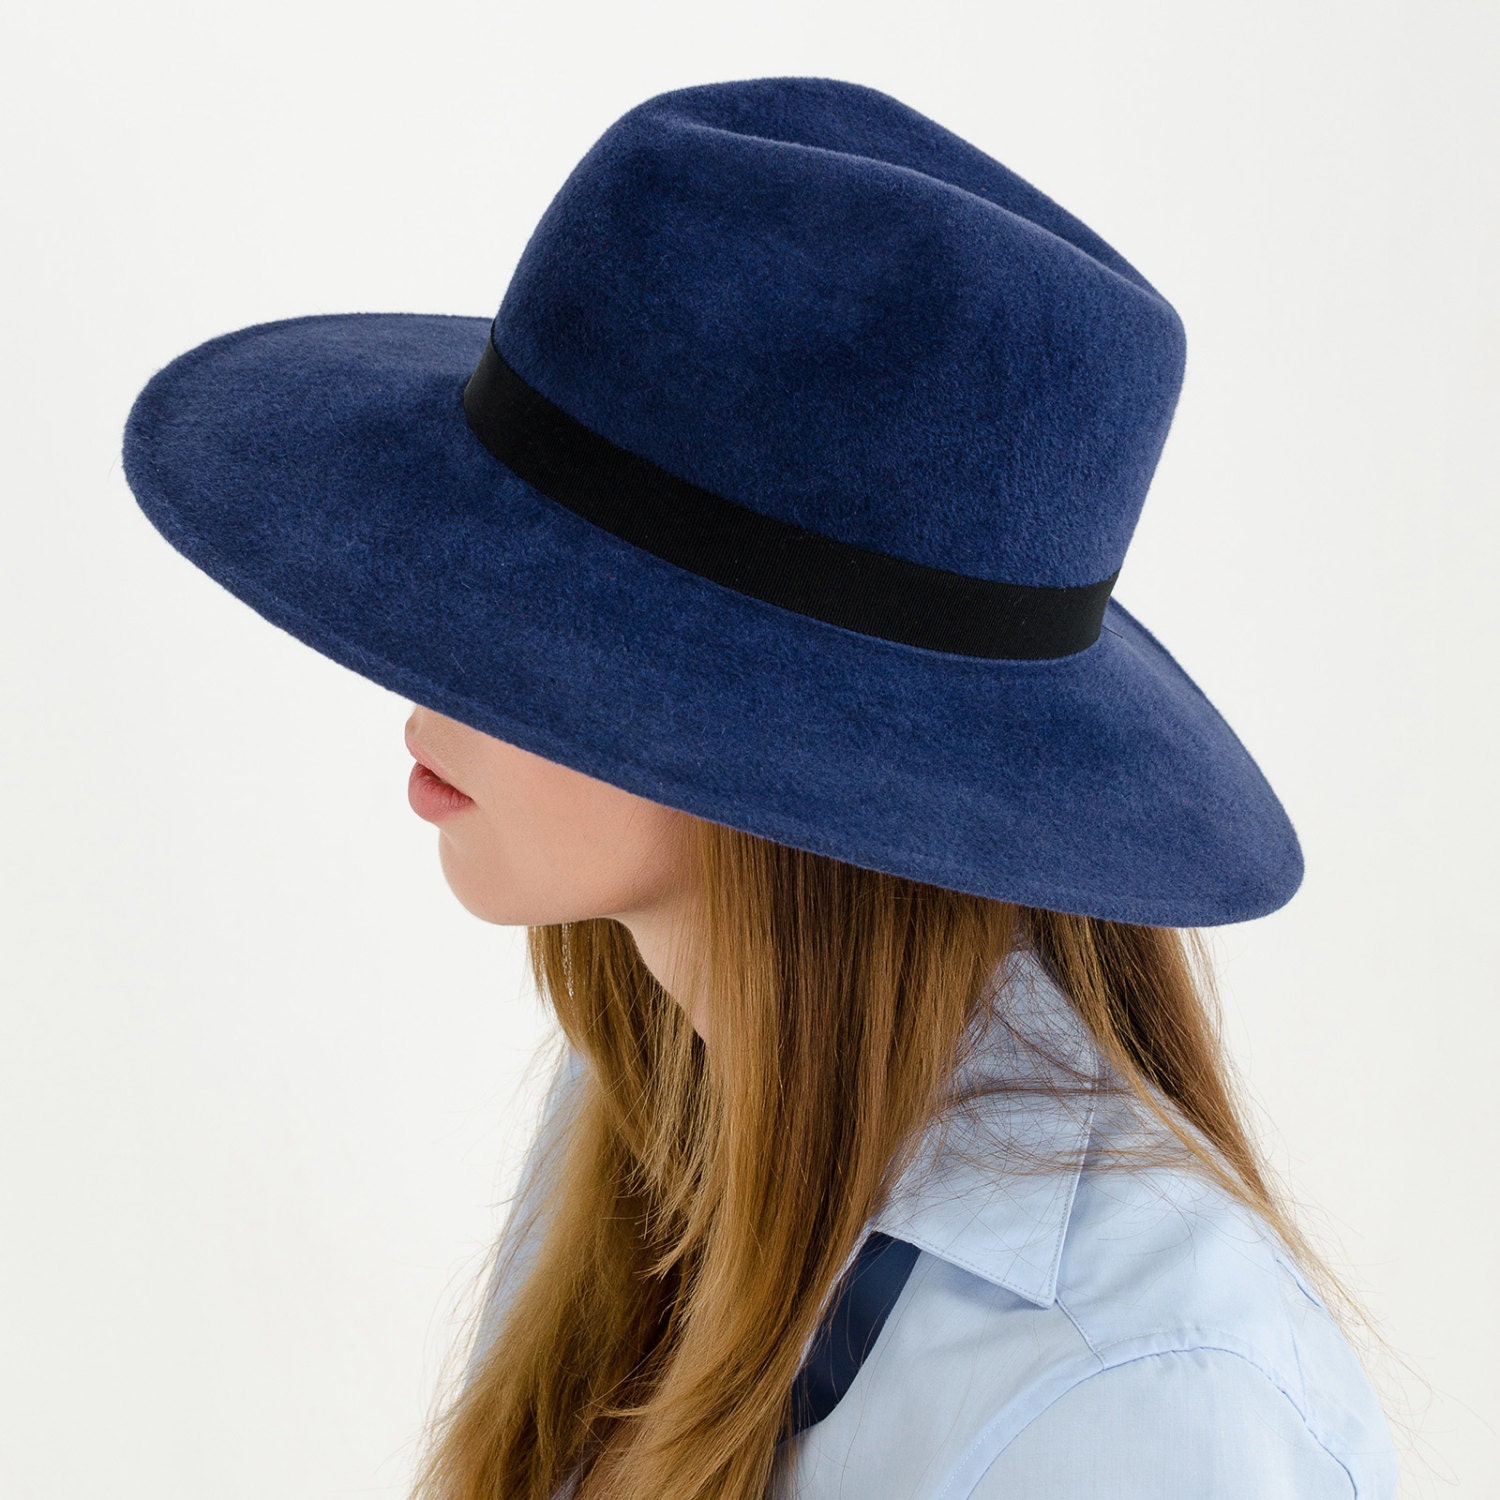 Шляпа Федора wide Brim. Фетровая шляпа Федора. Синяя шляпа. Шляпа фетровая синяя женская. Шляпа синего цвета